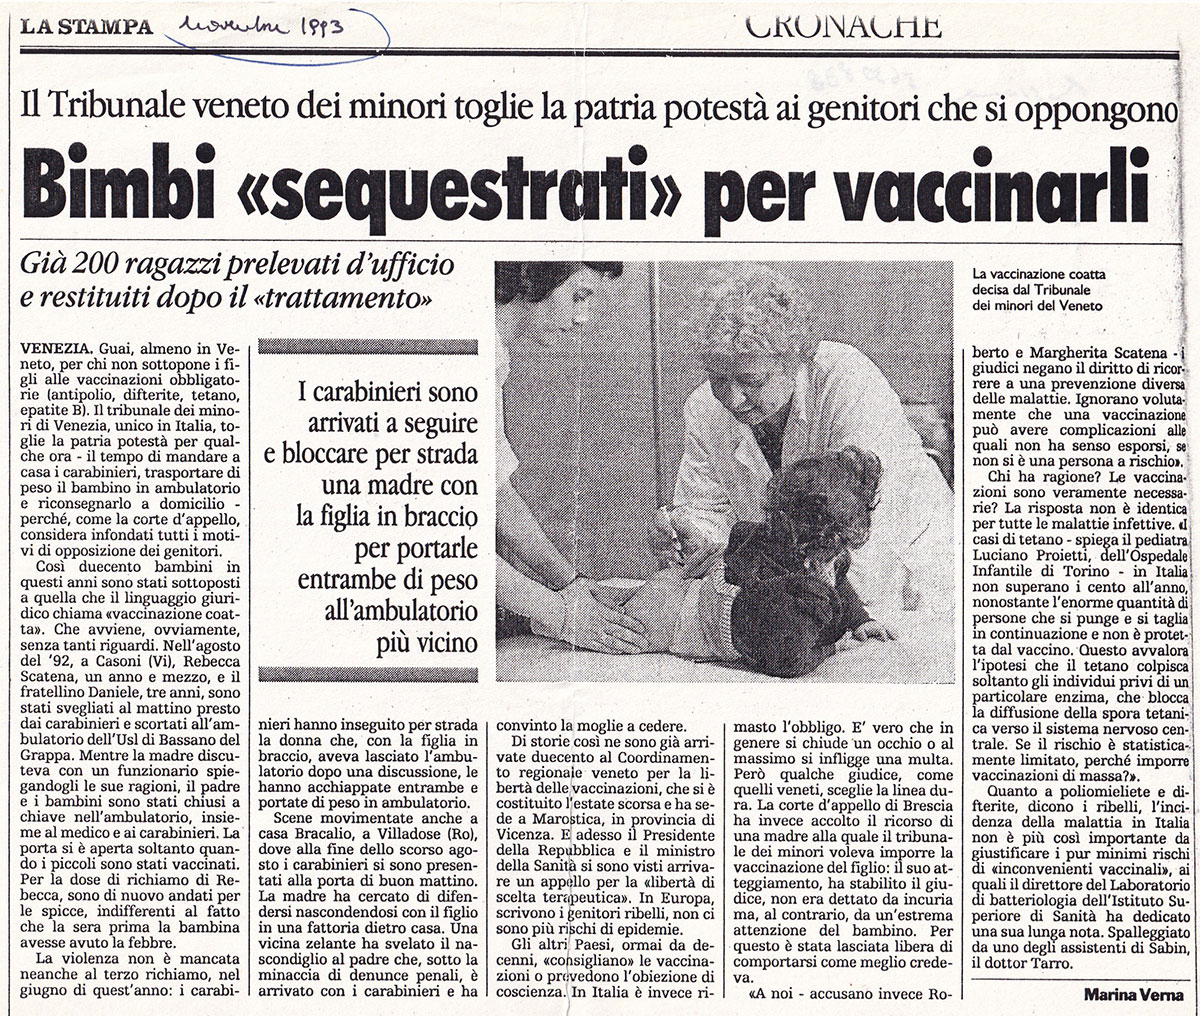 Детей «схватили» на прививку. Ла Стампа, ноябрь 1993 г.